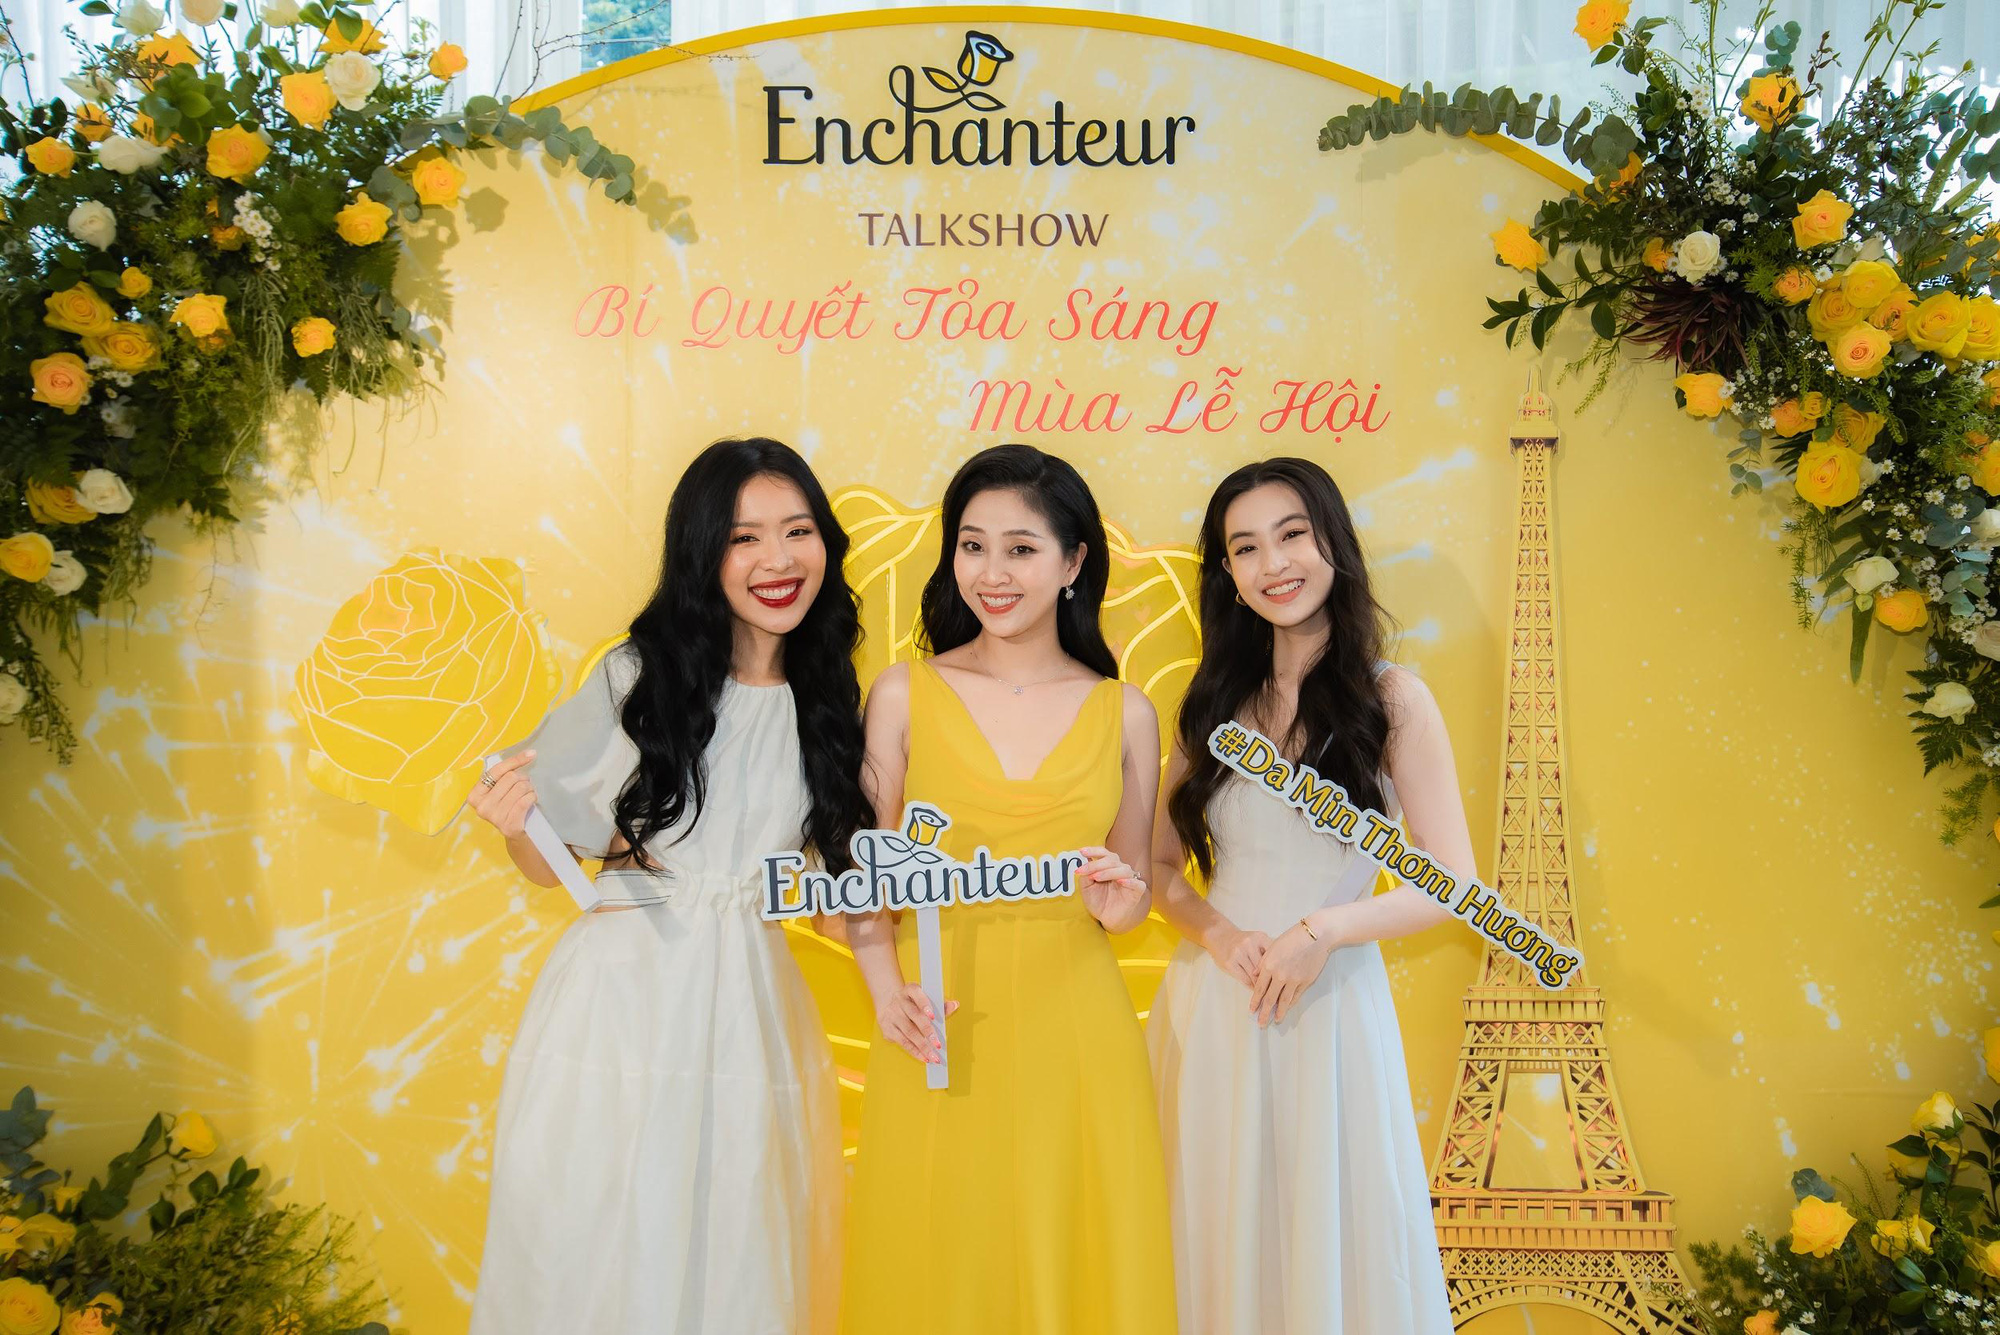 Thảo Tâm, An Phương, Liêu Hà Trinh cùng nhau trò chuyện về bí quyết tỏa sáng mùa lễ hội với Enchanteur - Ảnh 1.